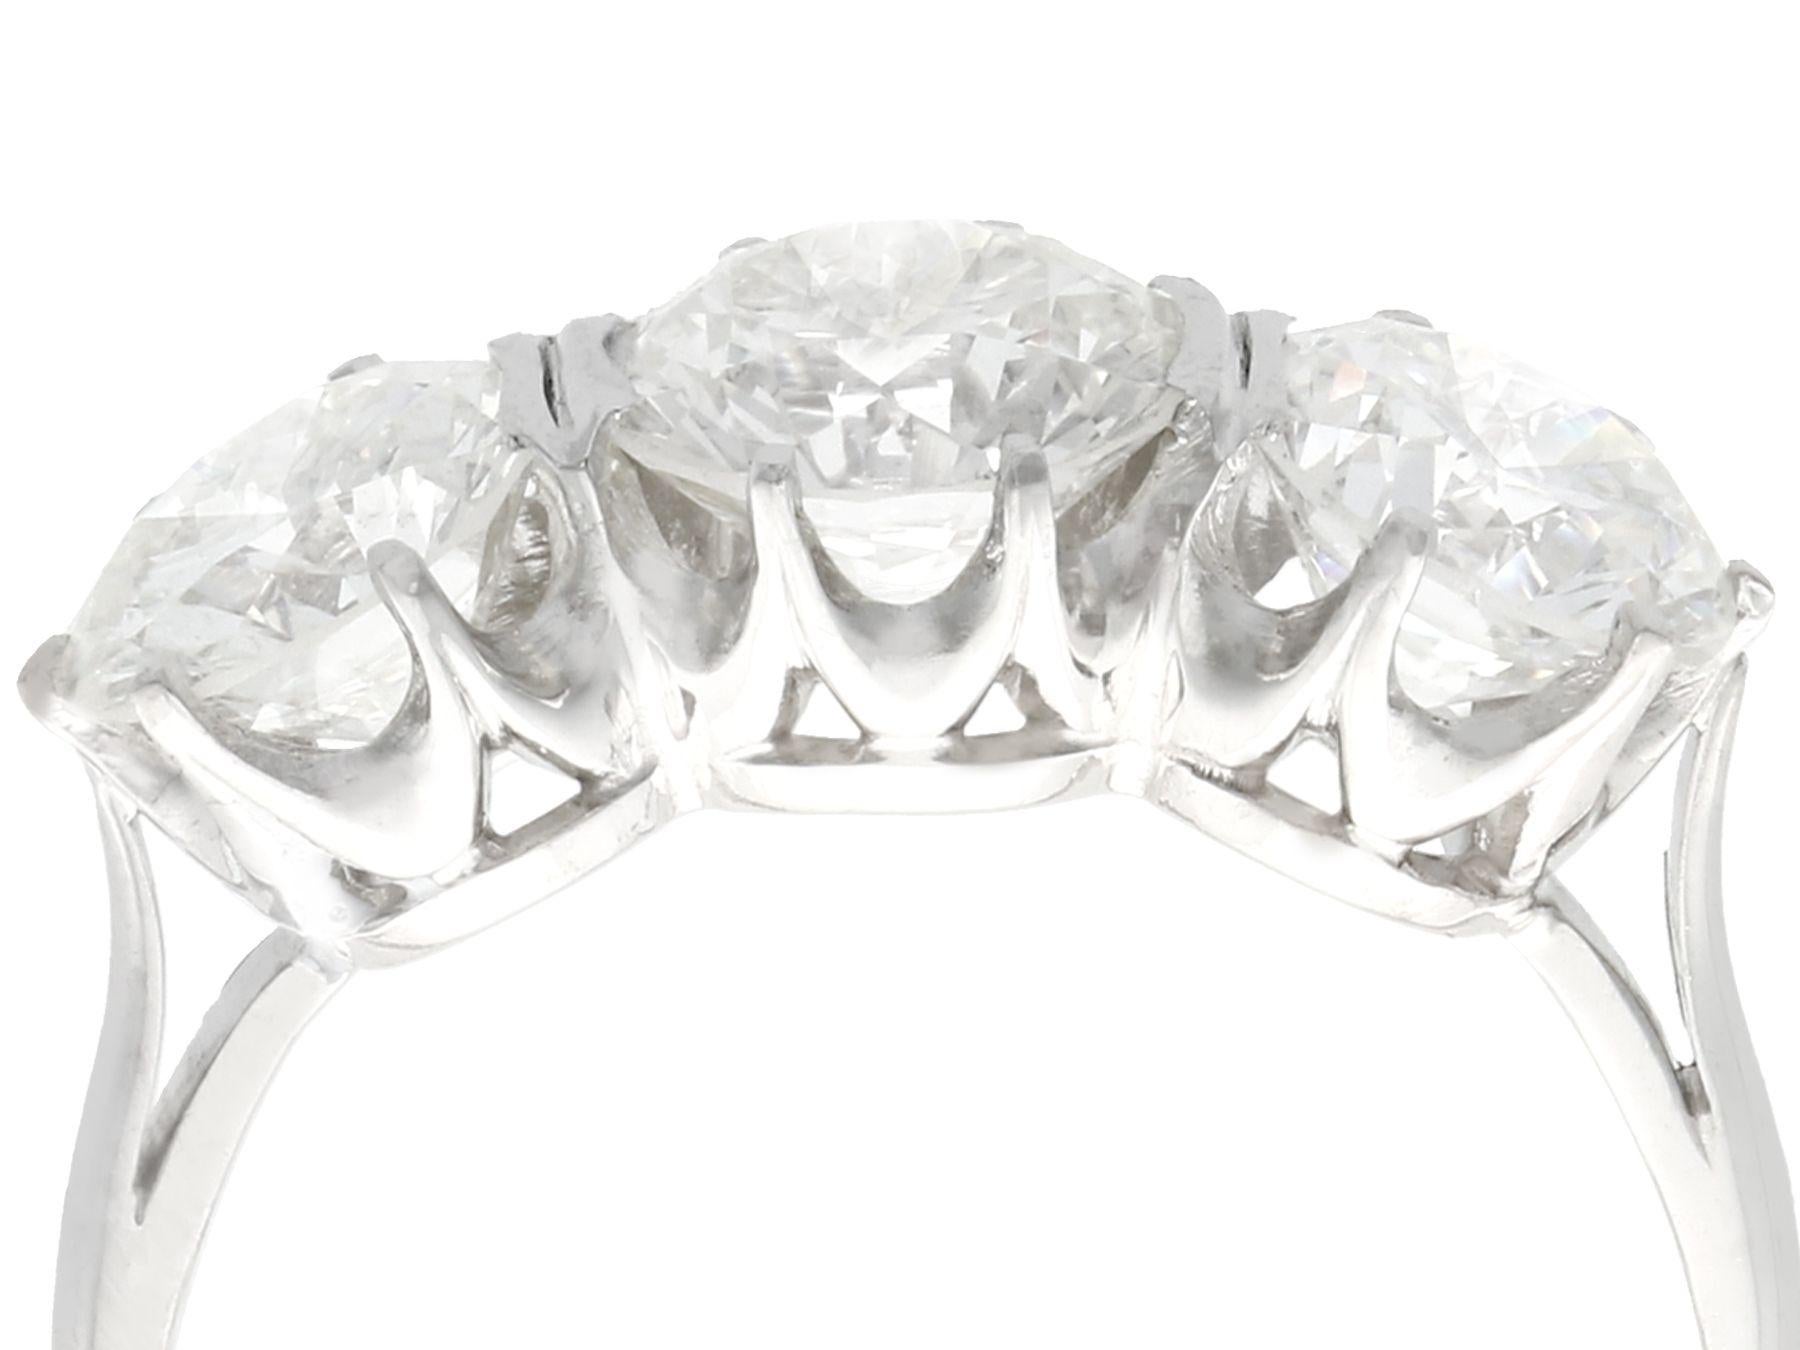 Ein atemberaubender, feiner und beeindruckender Vintage-Ring mit 3,53 Karat aus Diamanten und Platin; Teil unserer vielfältigen Verlobungsring-Kollektionen.

Dieser atemberaubende Verlobungsring im Vintage-Stil aus den 1950er Jahren wurde in Platin